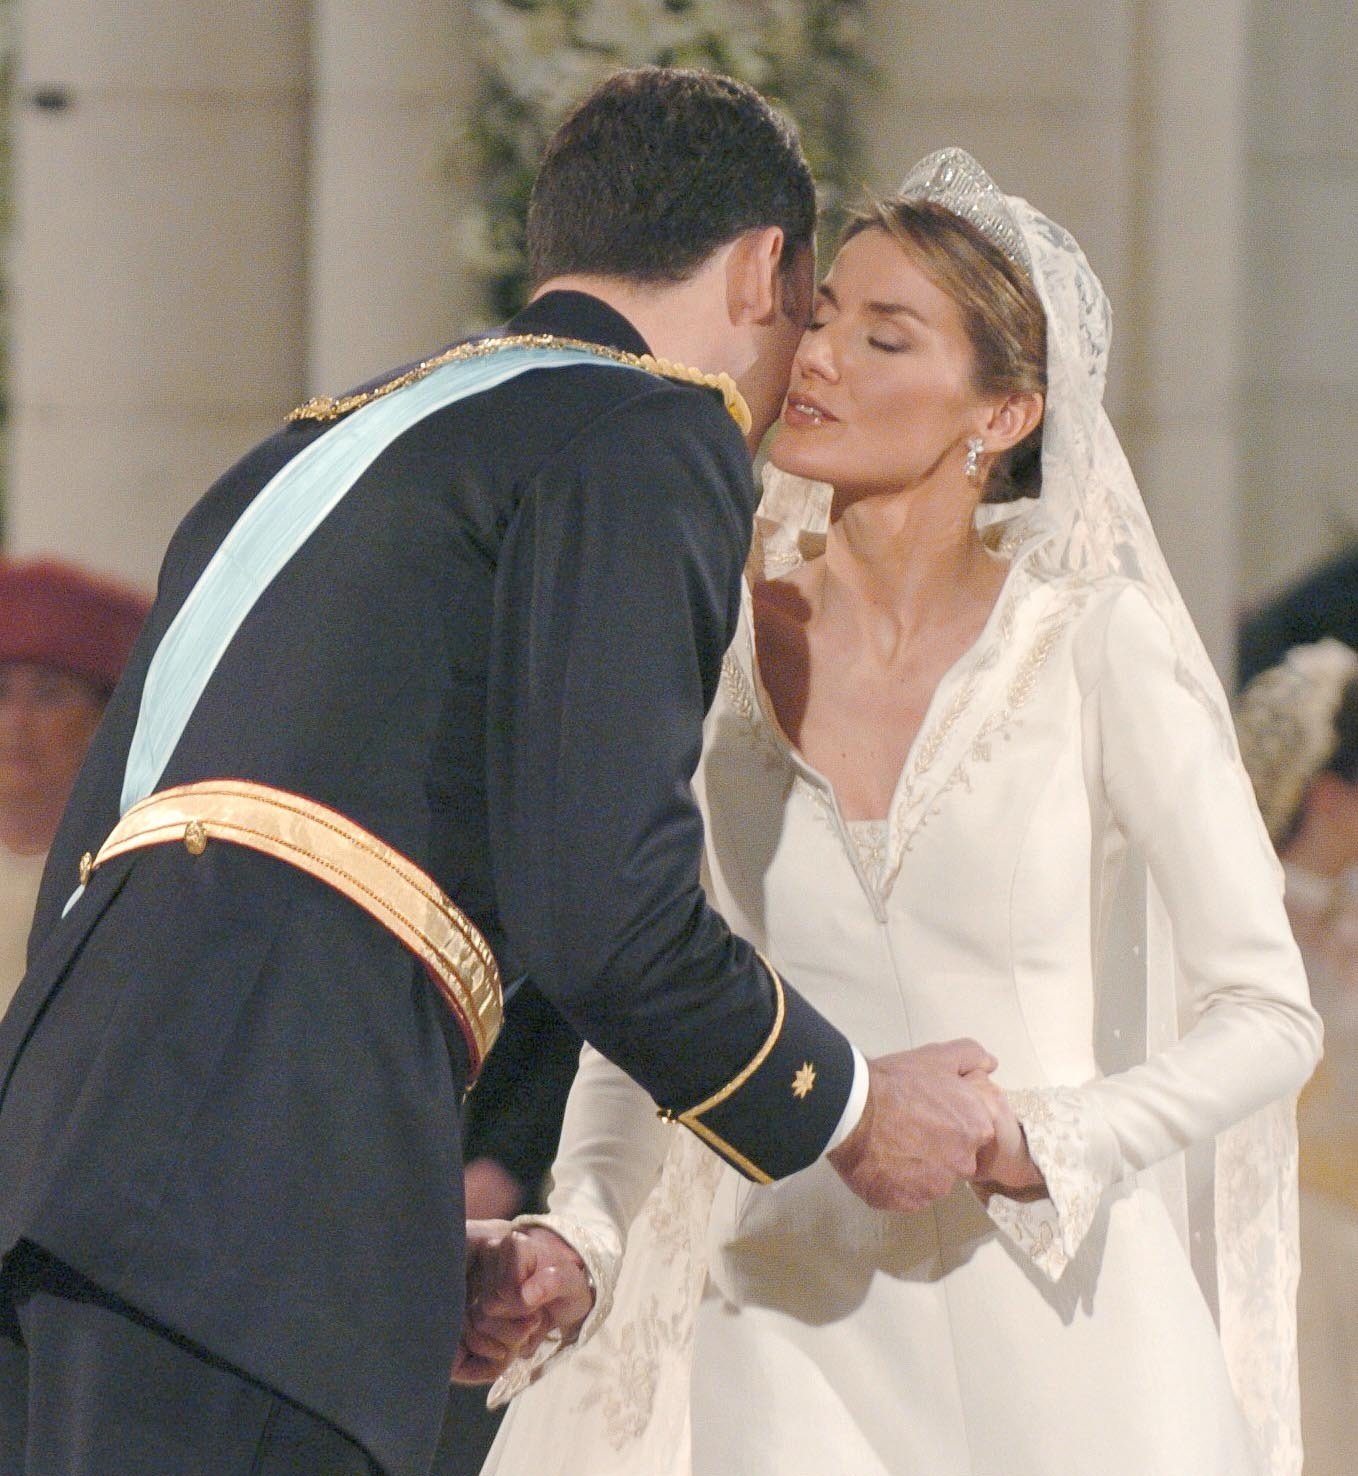 Peñafiel y la triste boda de Letizia. La ira del rey: "Que la traigan ya"